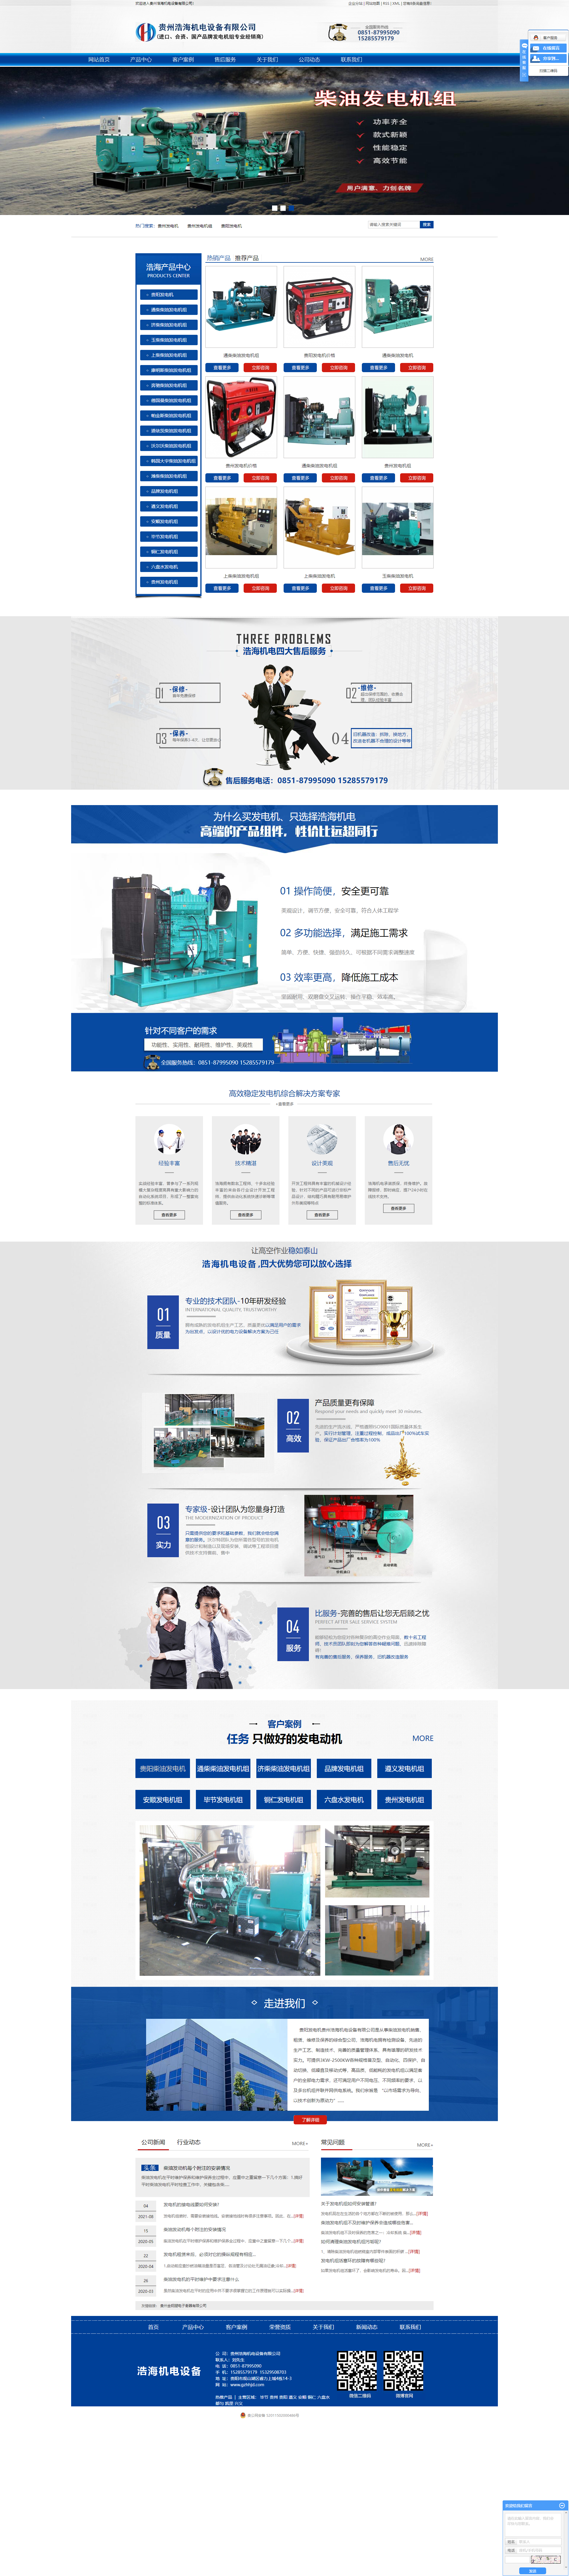 贵州浩海机电设备有限公司网站案例